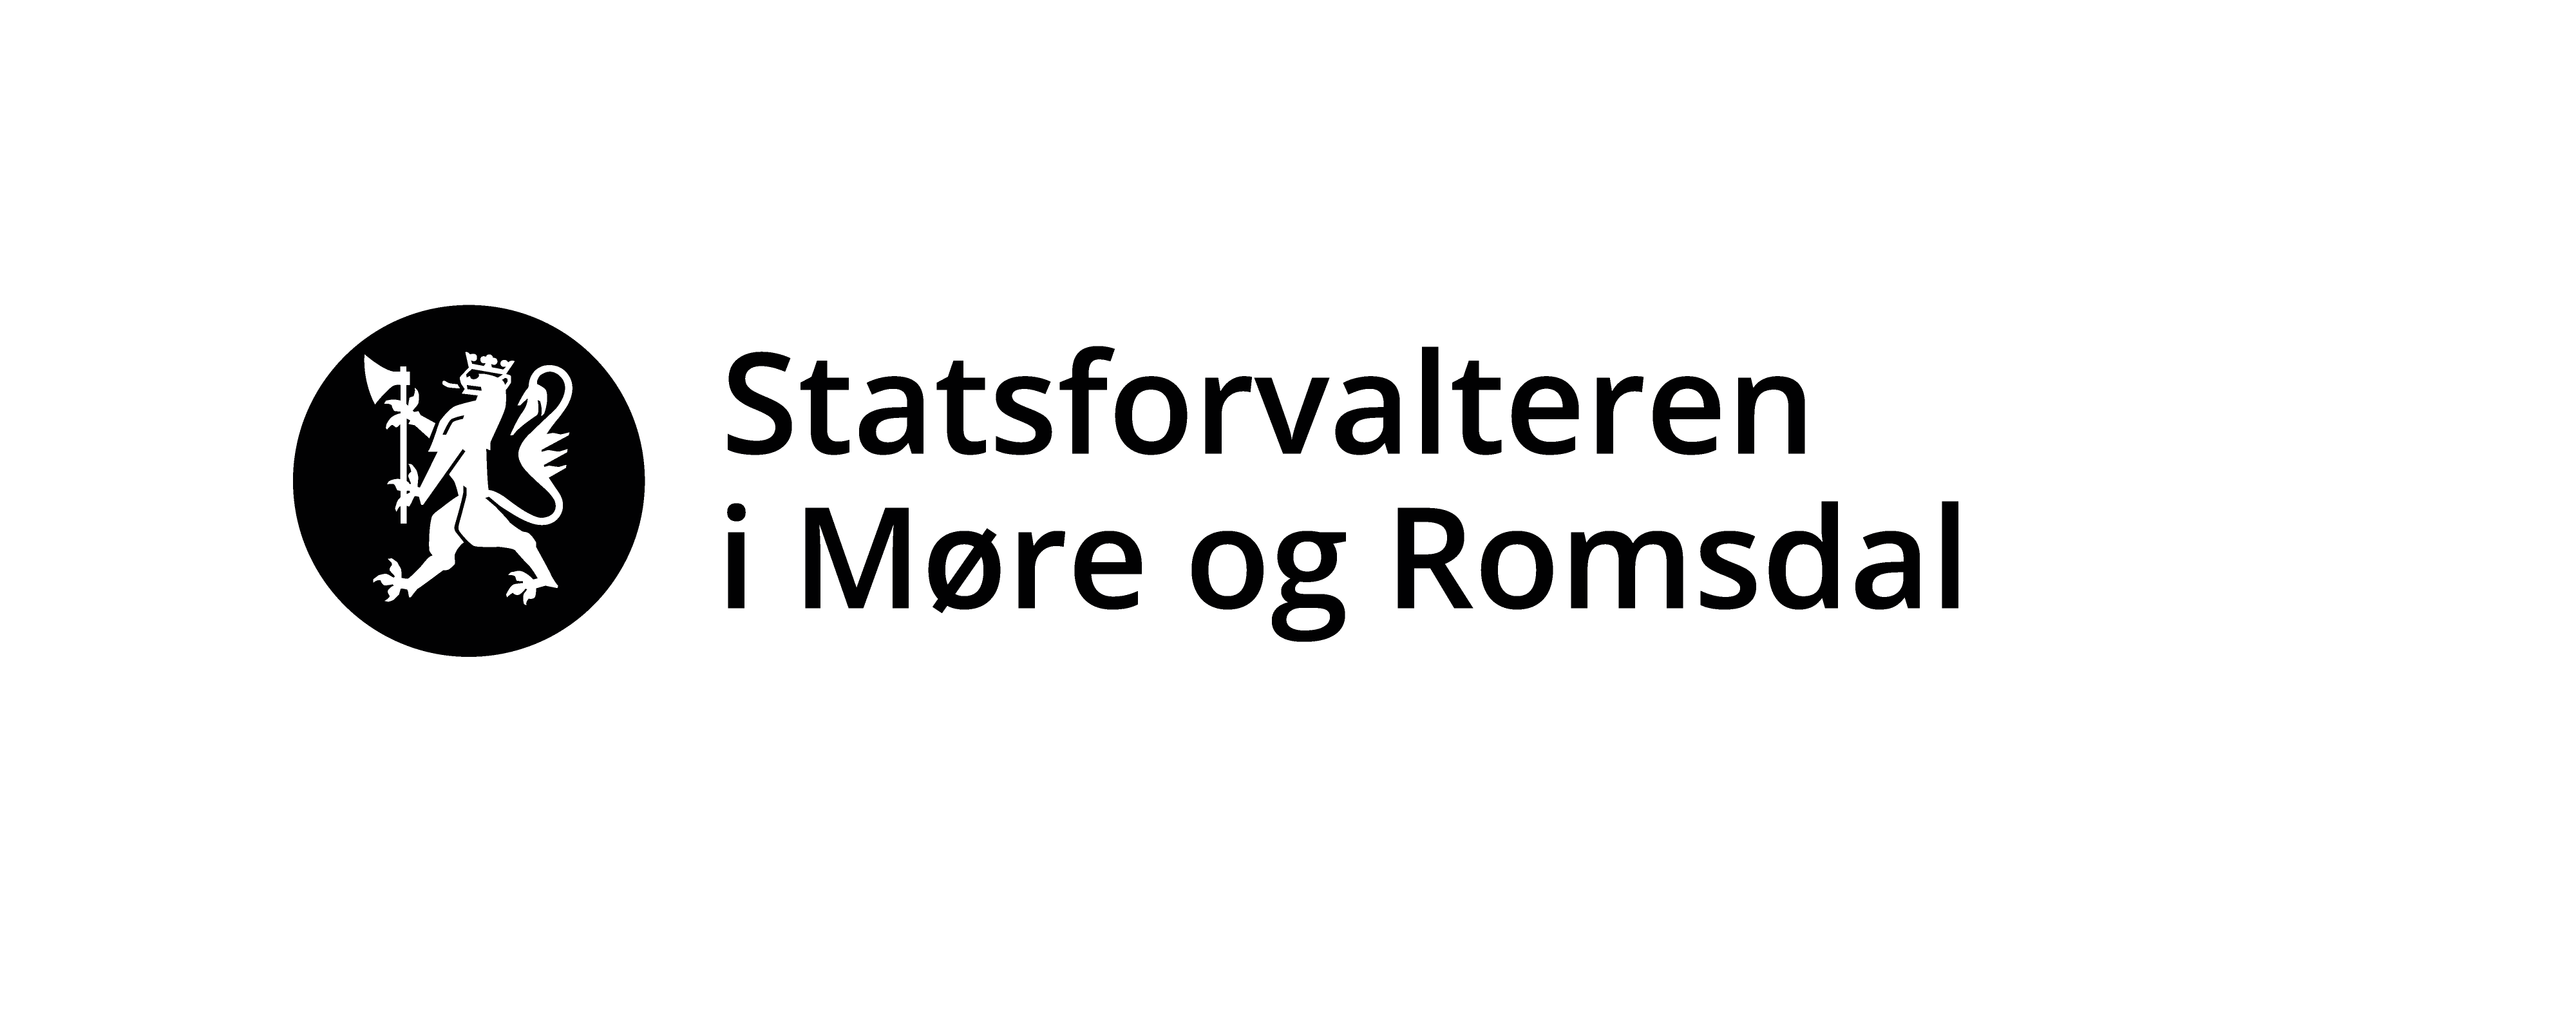 Statsforvalteren møre og romsdal logo